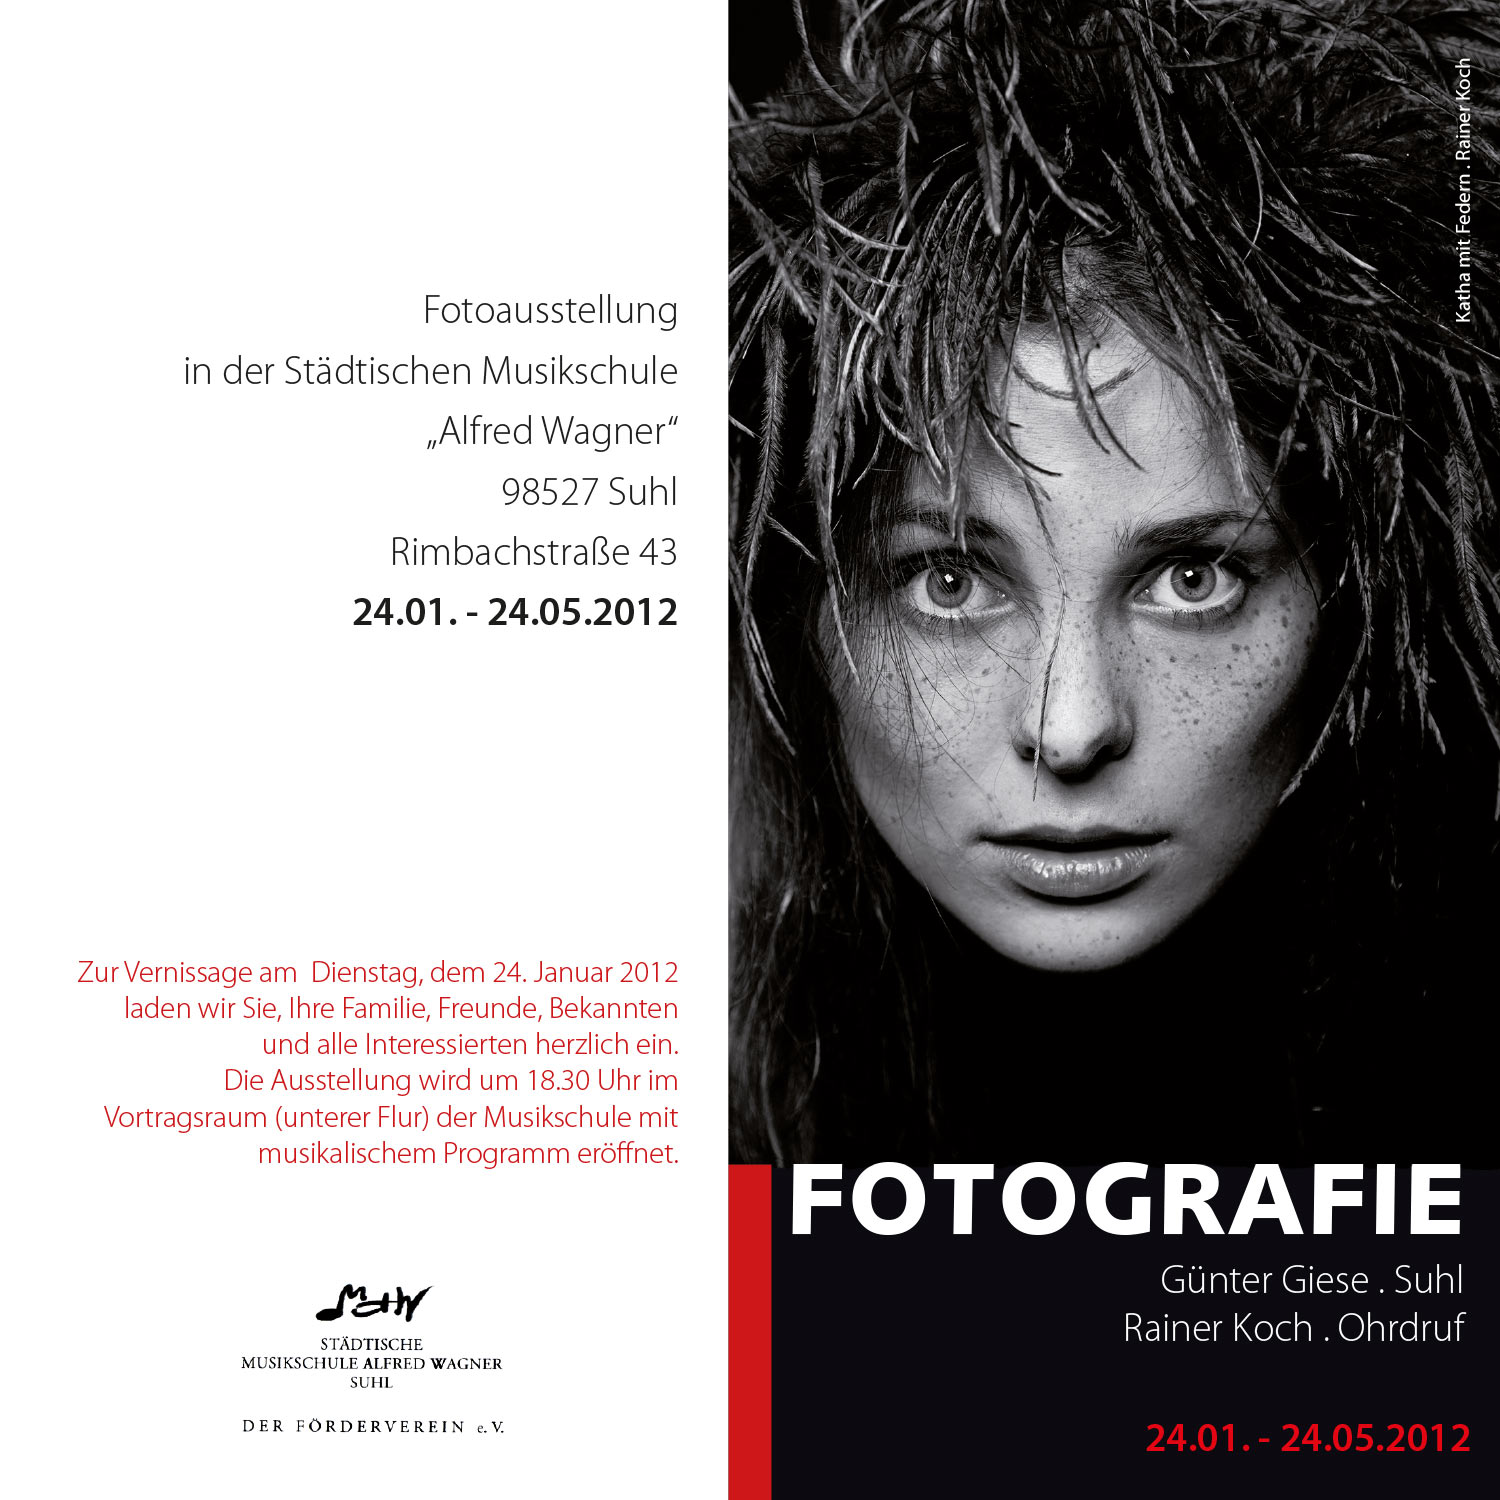 Flyer Plakat Fotoausstellung Fotografie Giese Koch 12 Designakut